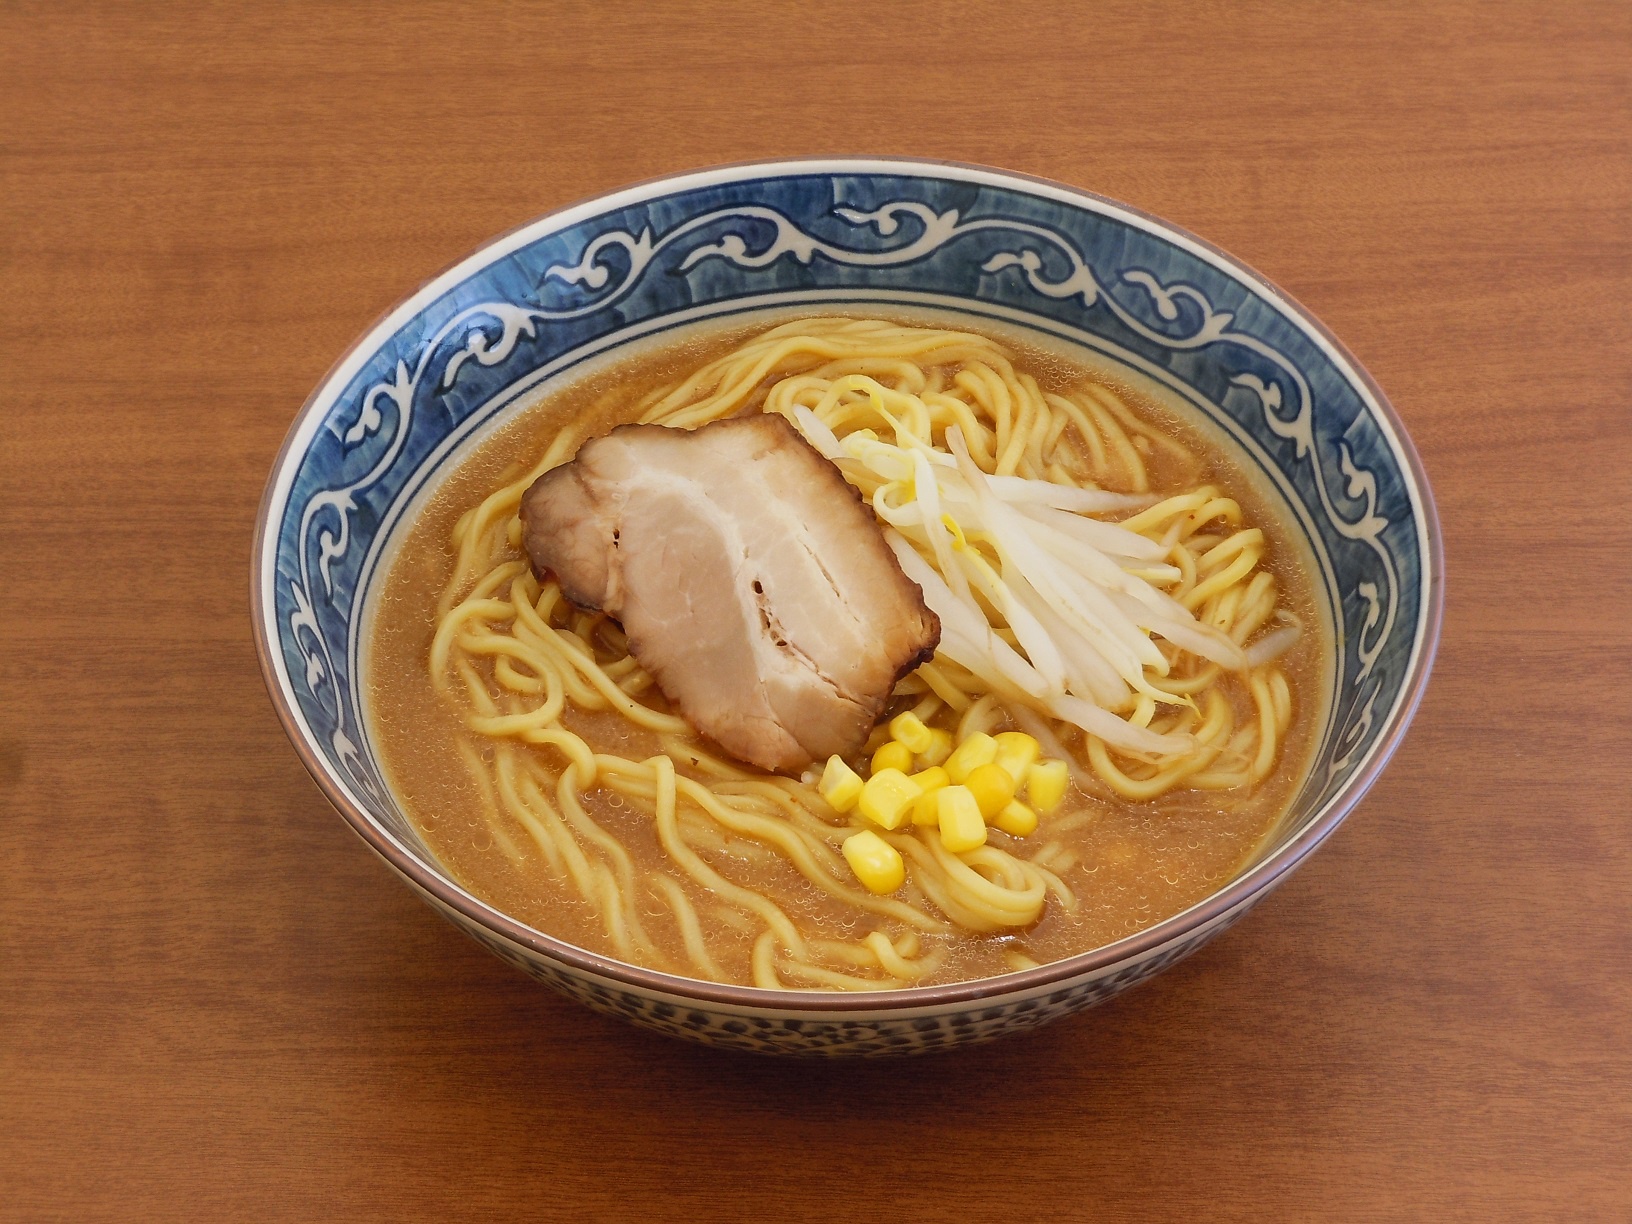 【業務用】キンレイ 具付麺味噌ラーメンセット 256g